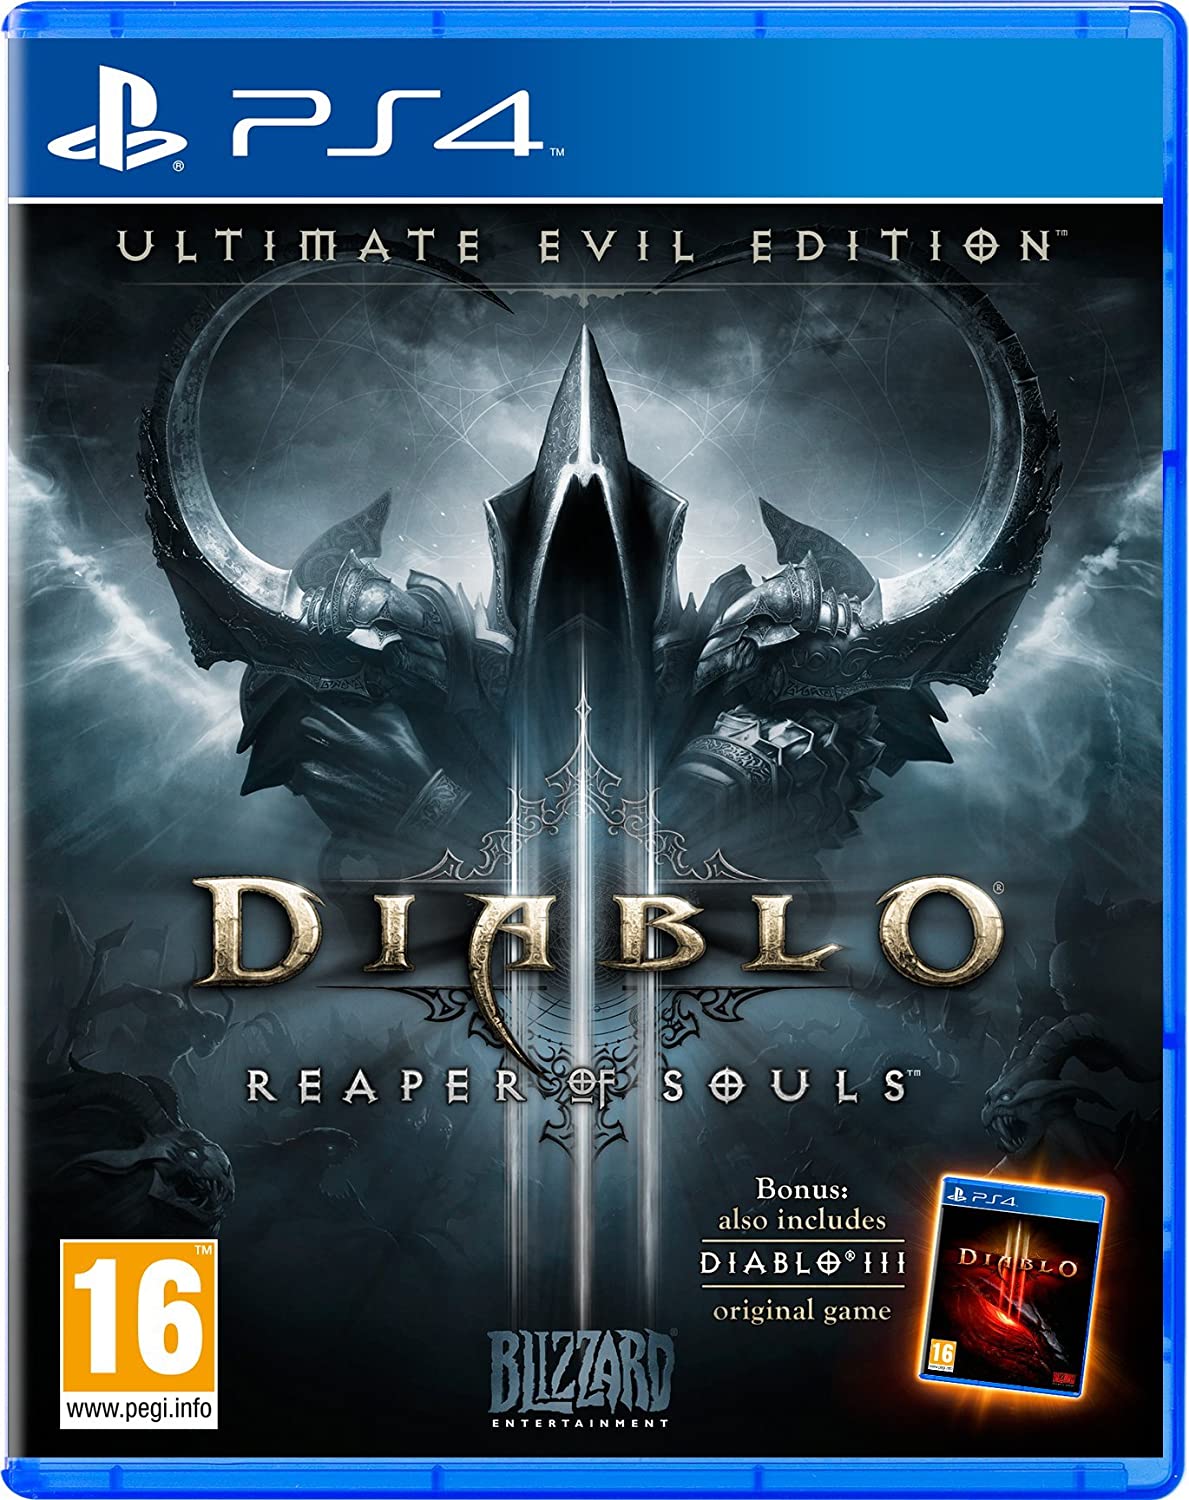 Diablo 3 Reaper Of Souls Game Key Generator Full